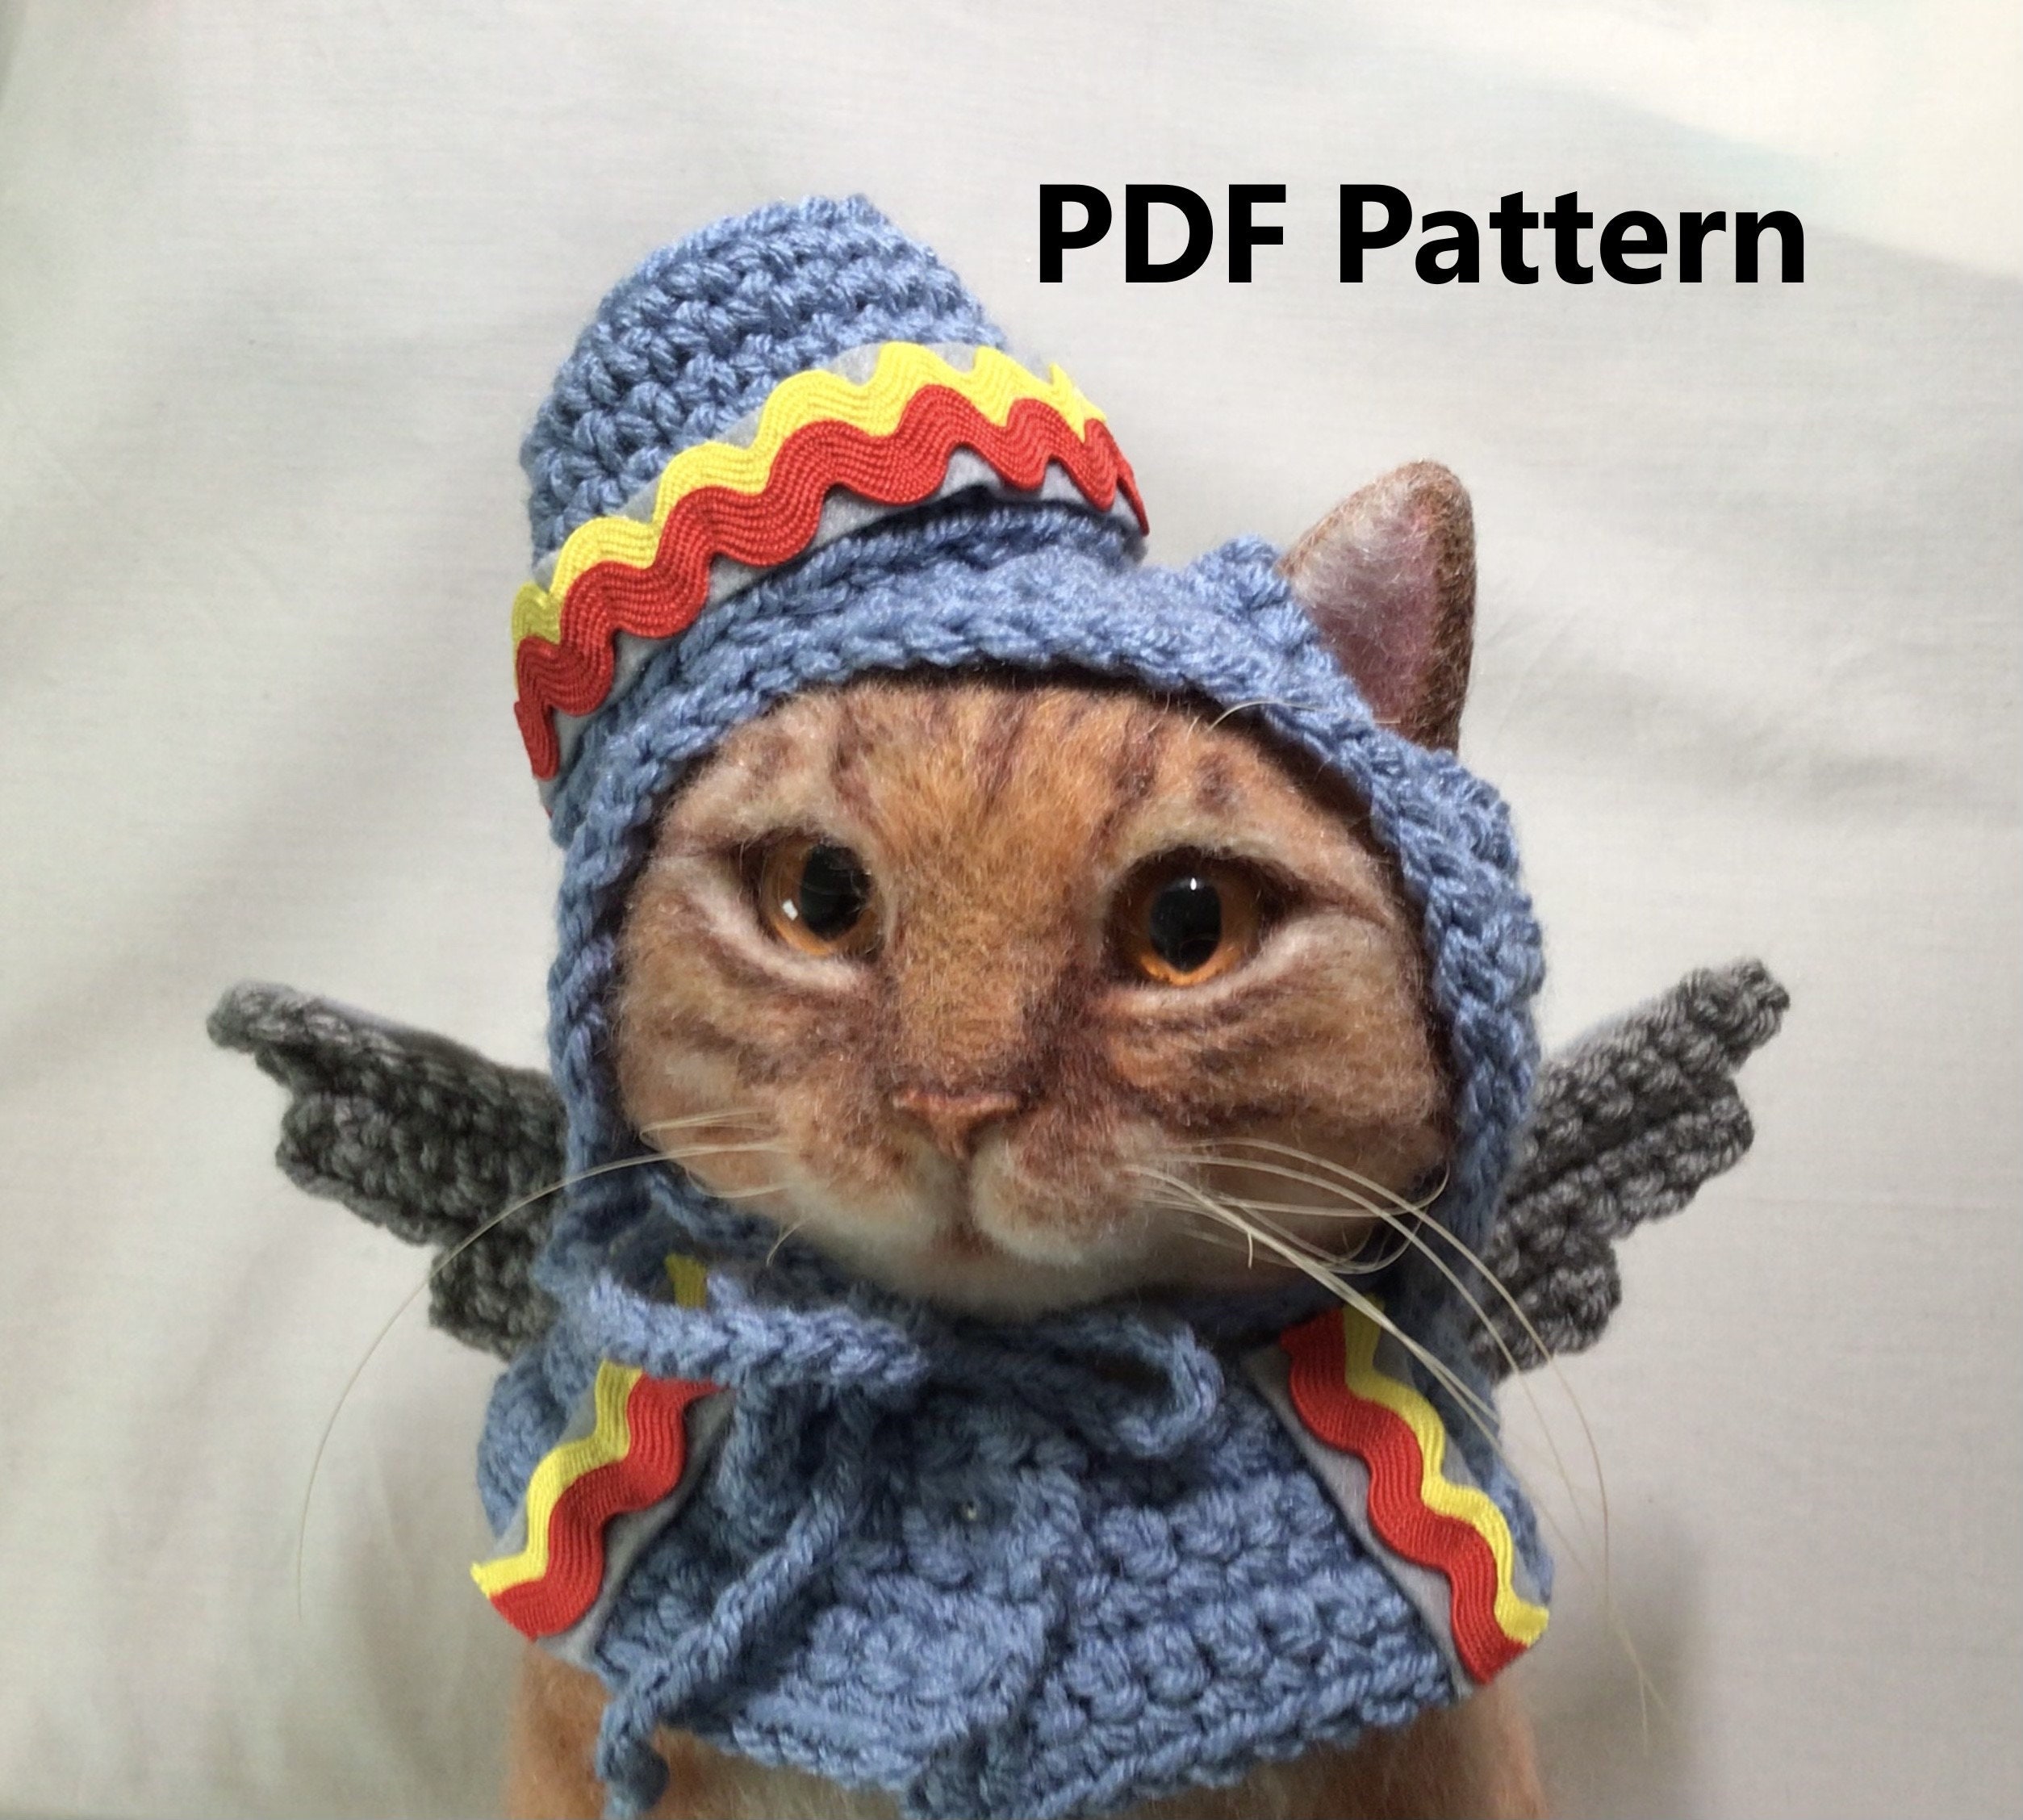 5 Pcs Chapeau de chat Adorable Costume Lapin Chapeau avec Oreilles